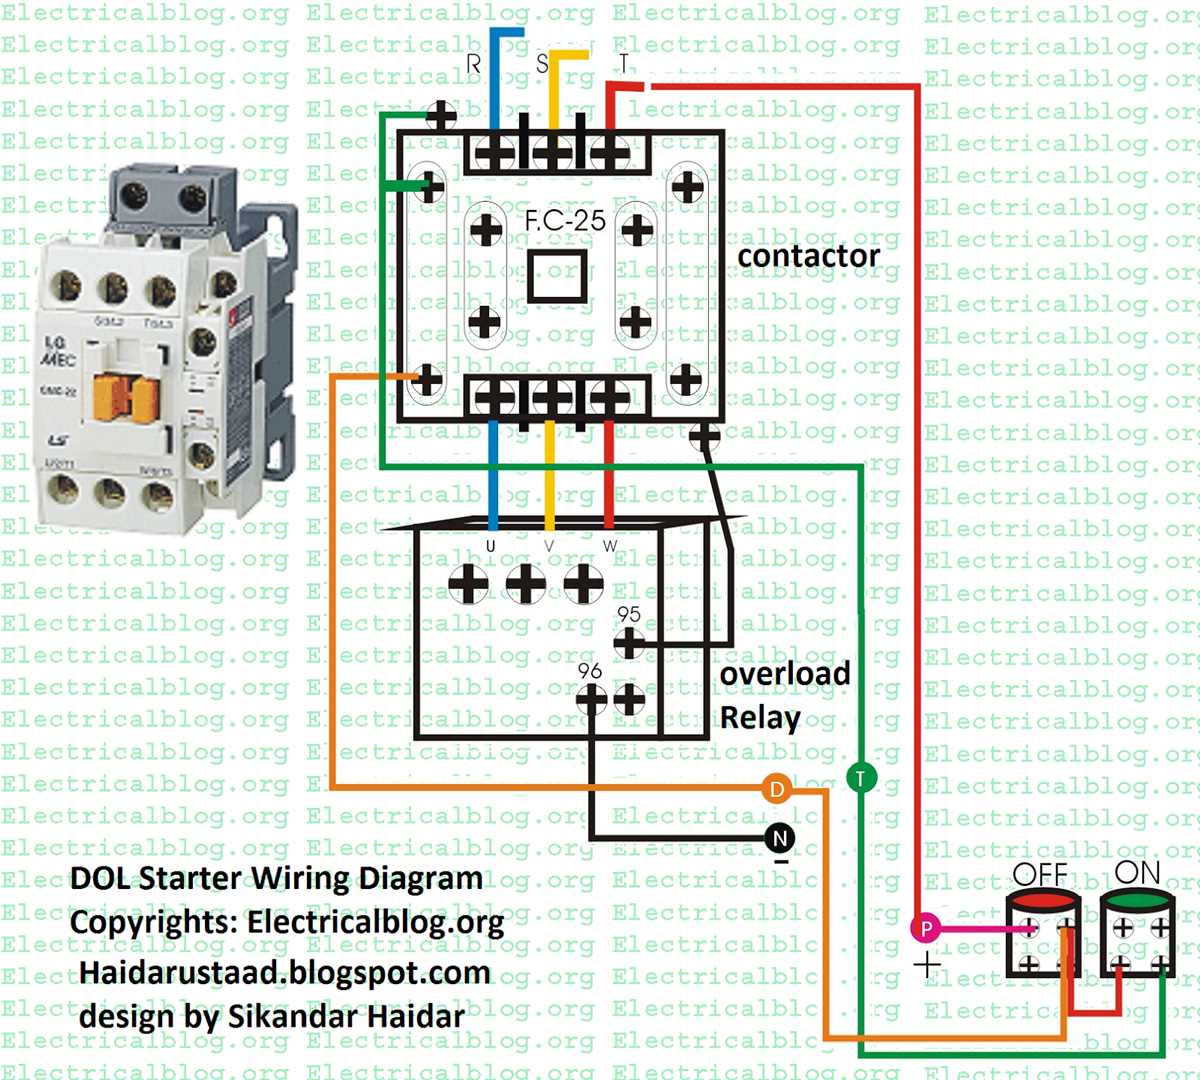 Gm starter wiring diagram